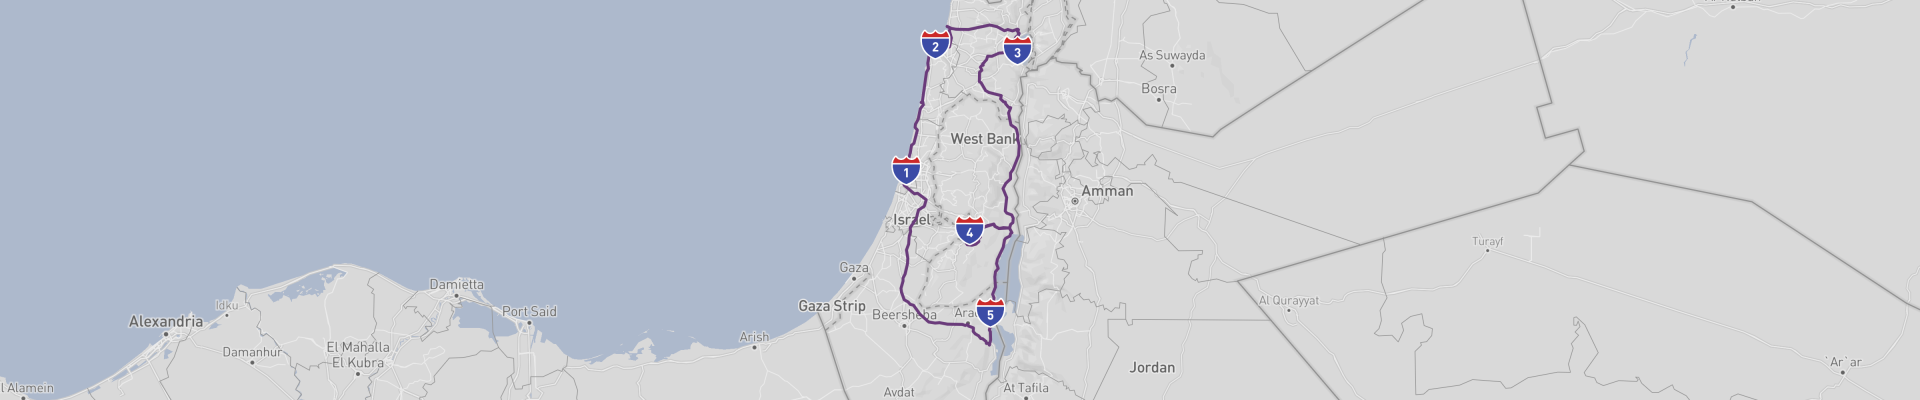 Viaje por carretera a lo más destacado de Israel